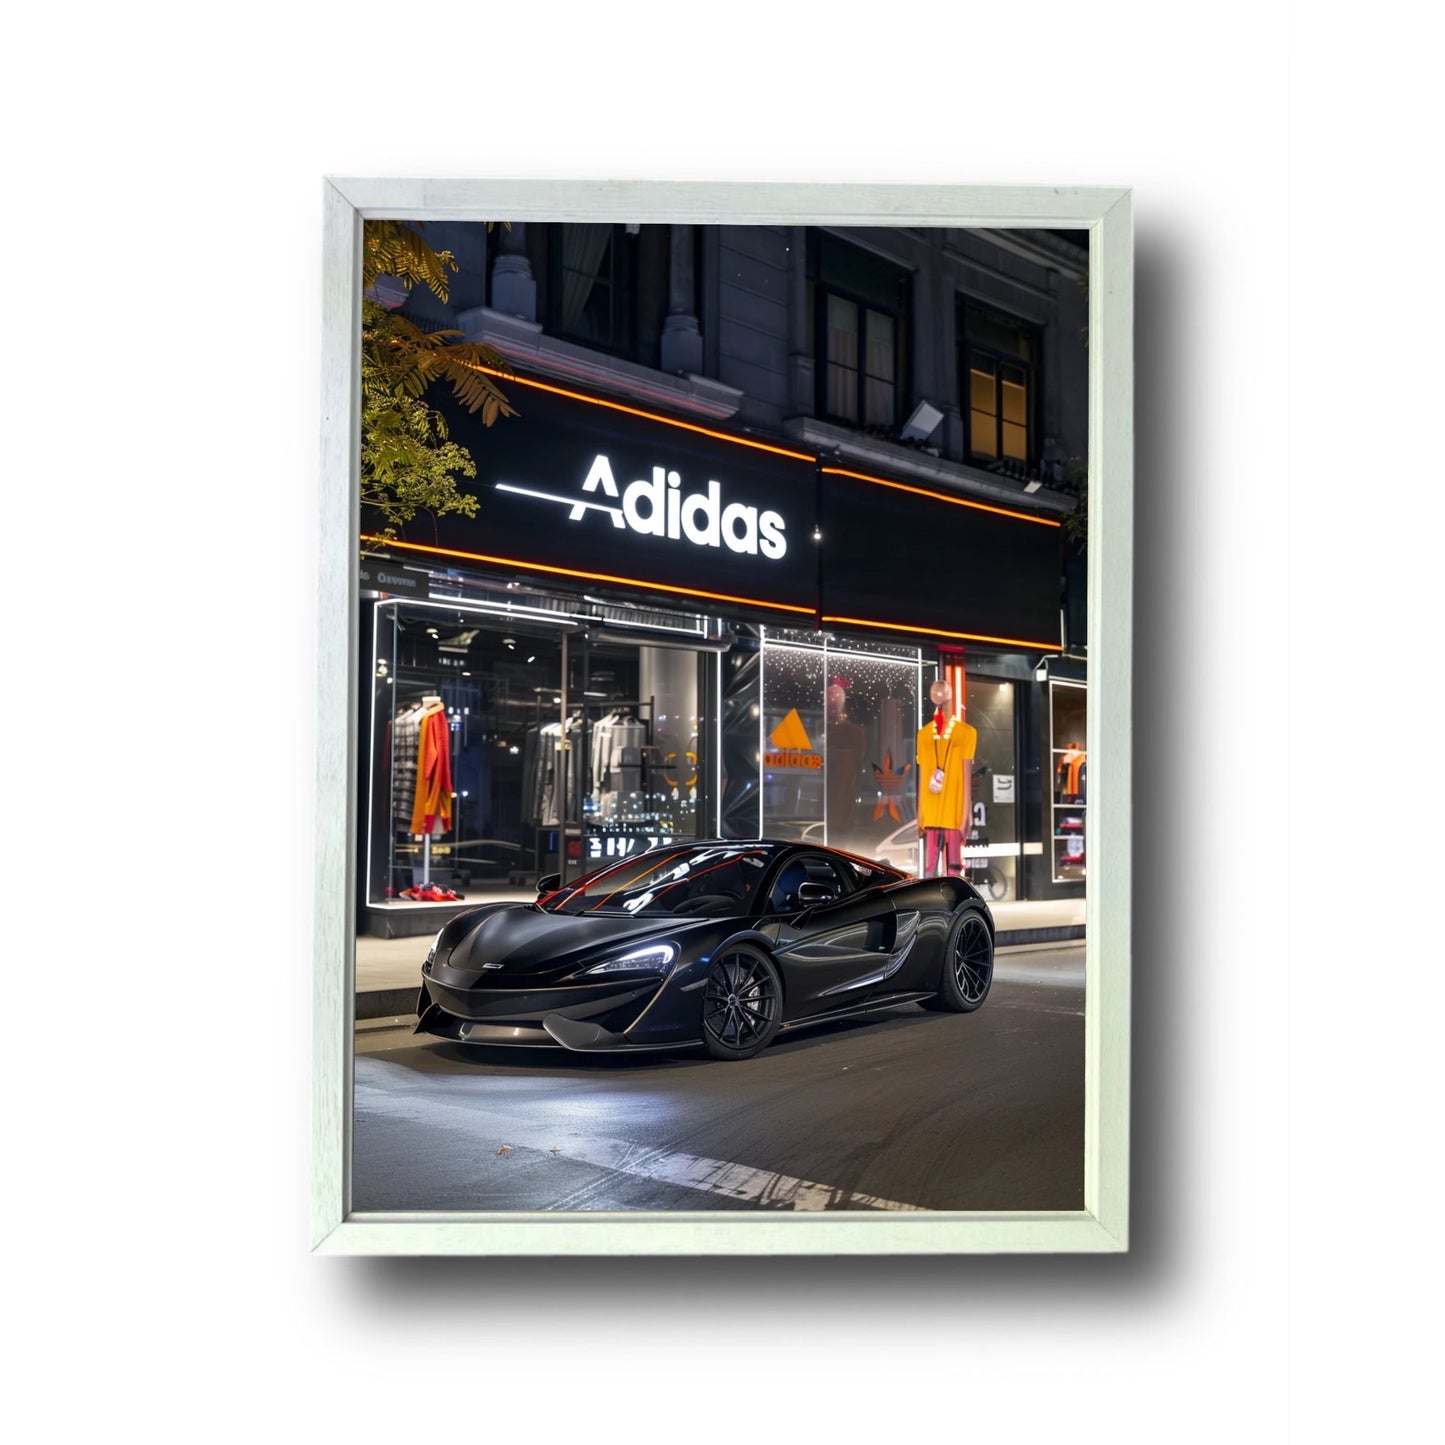 Mclaren Front of Adidas Store 3.0